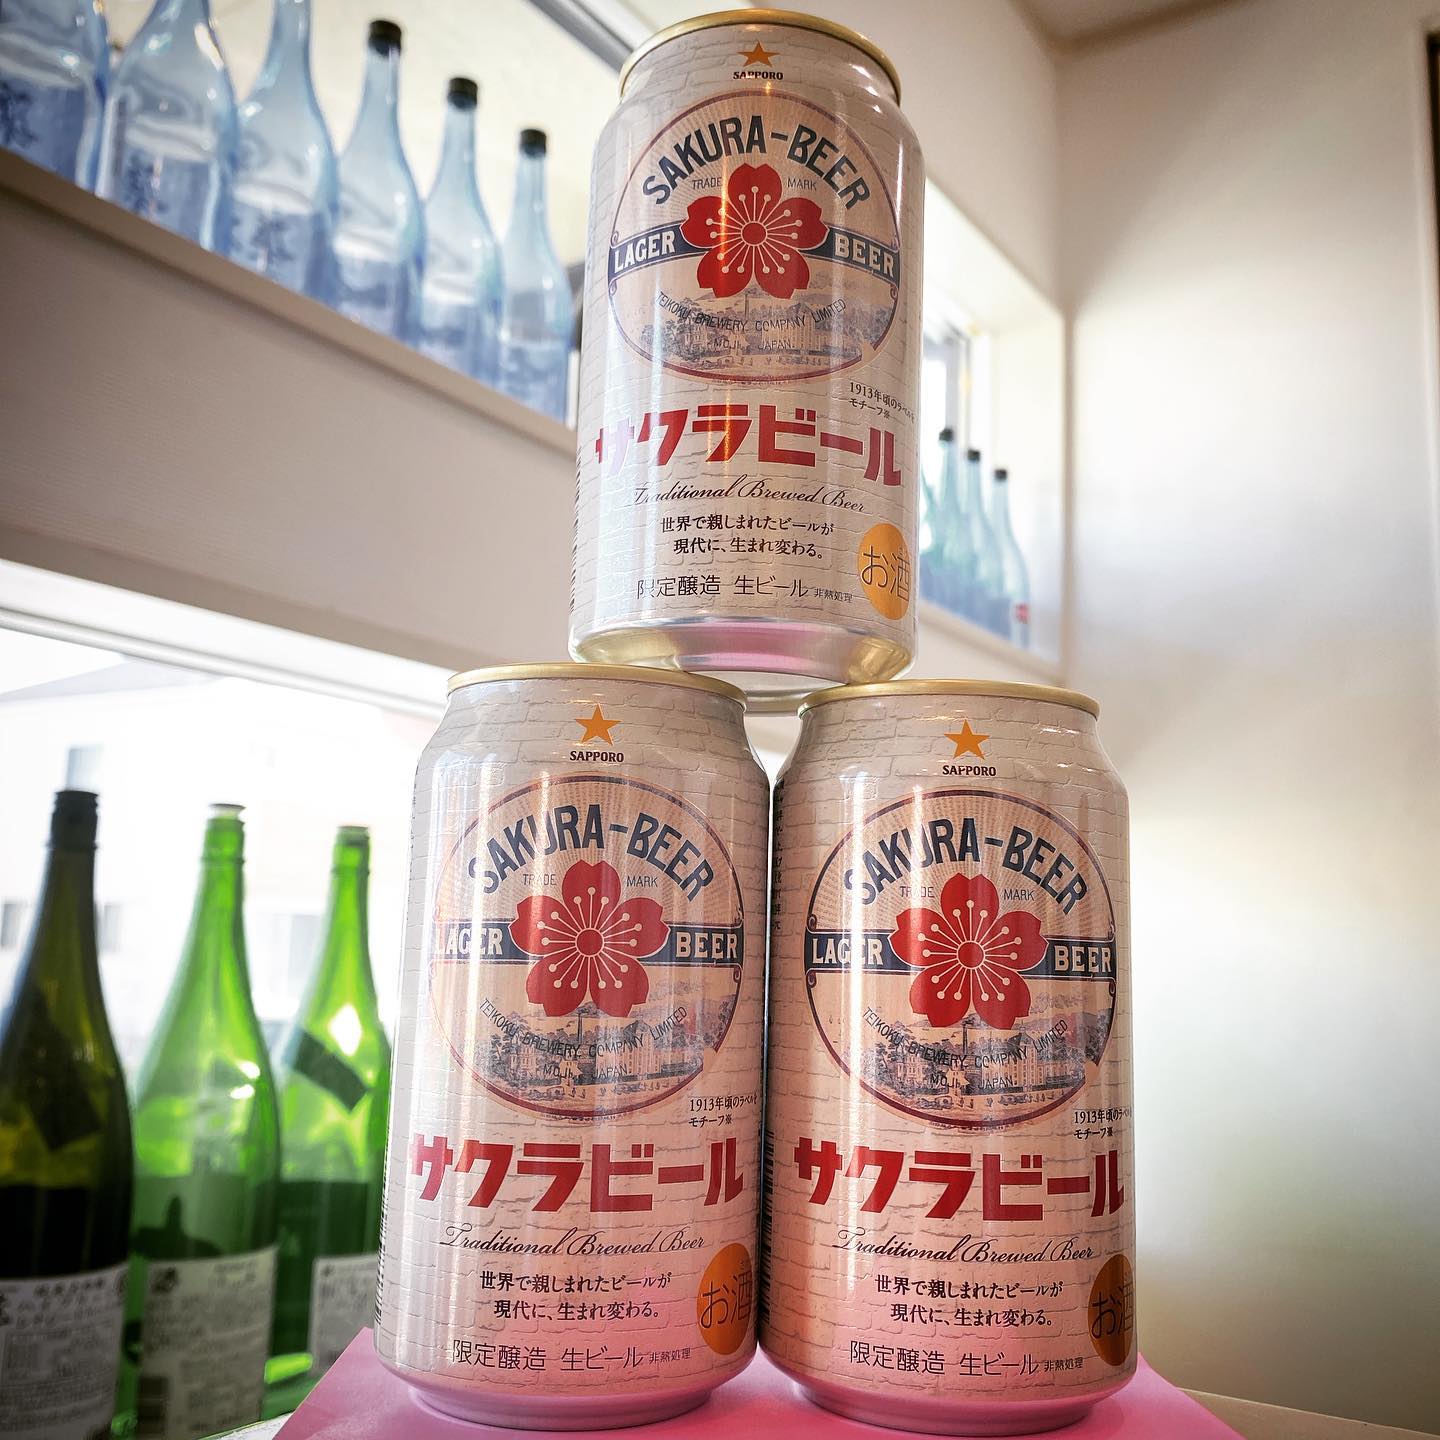 サッポロビール
限定醸造

大正2年から昭和初期世界で親しまれた帝国麦酒(株)の歴史あるビールを現代風にアレンジ️
数量限定です🤗